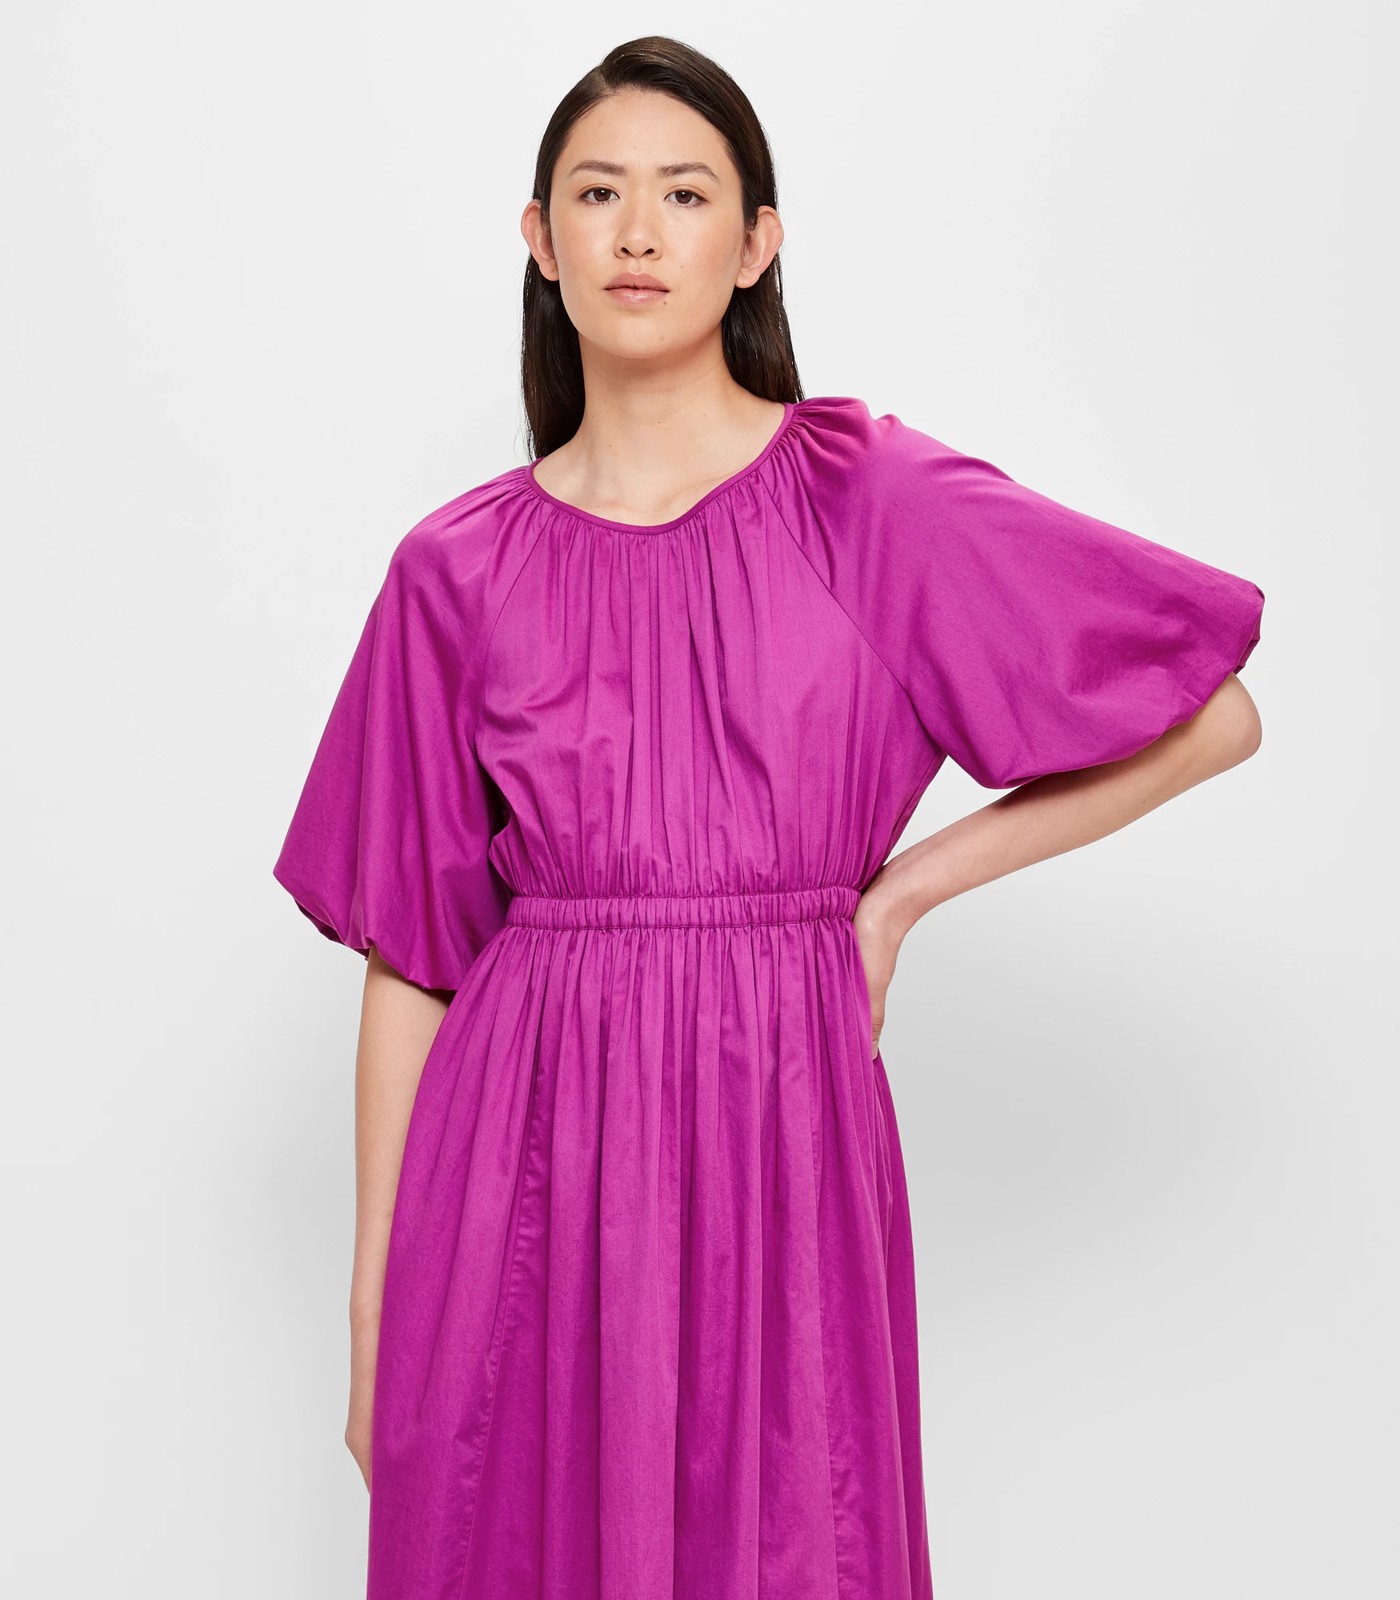 Balloon Sleeve Midi Dress - Preview | Target Australia